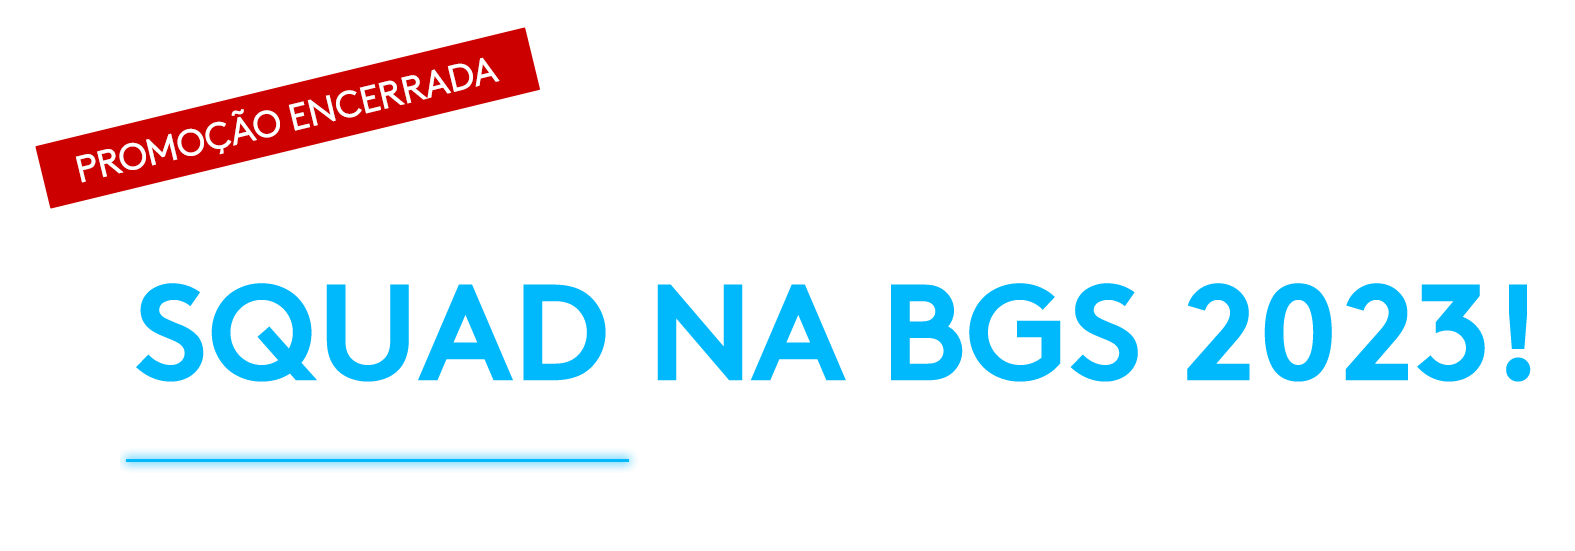 Você e seu squad na BGS 2023! Brasil Game Show 2023 11 a 15 de Outubro